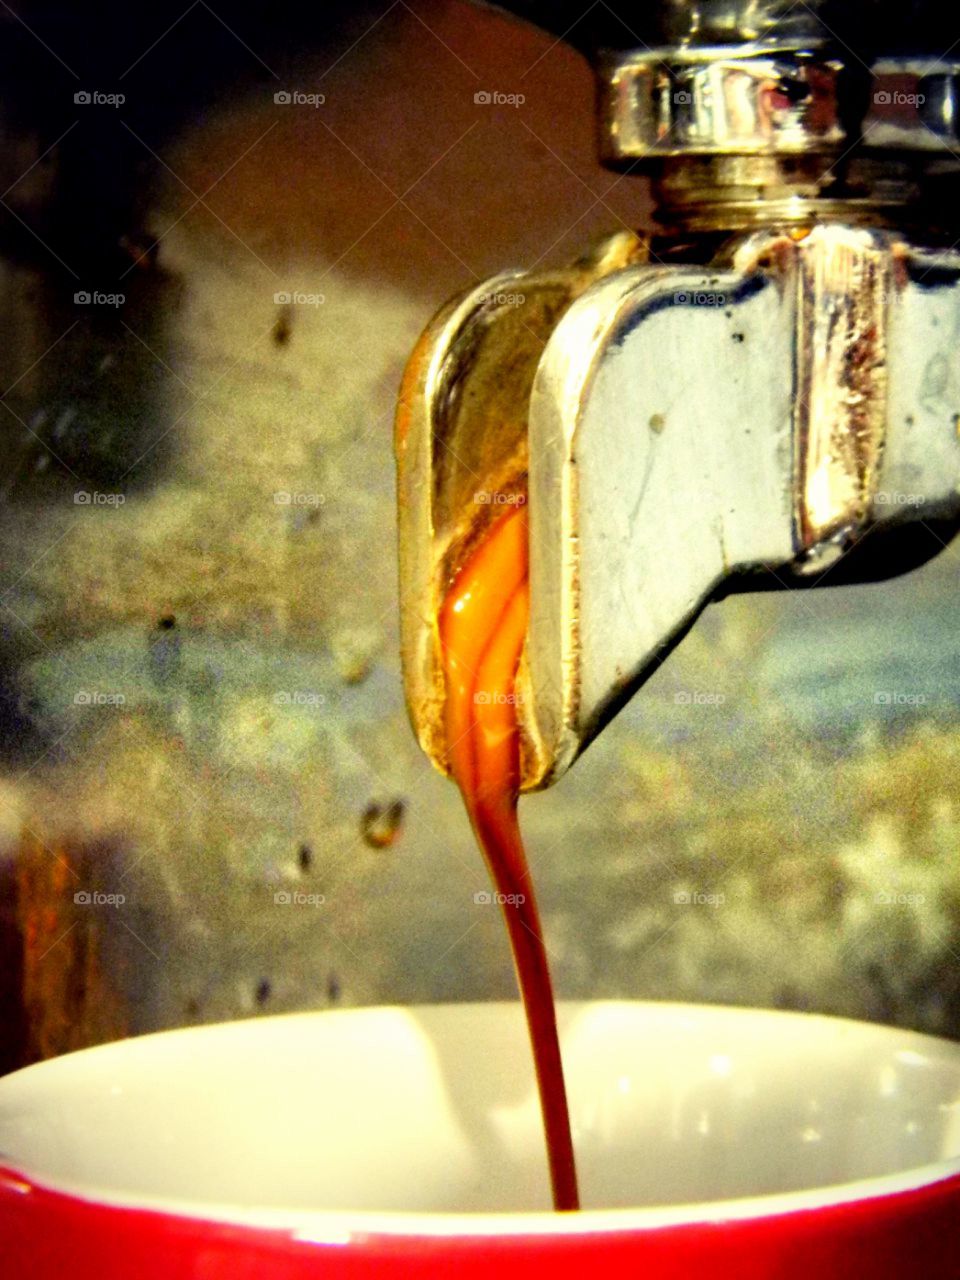 espresso creating